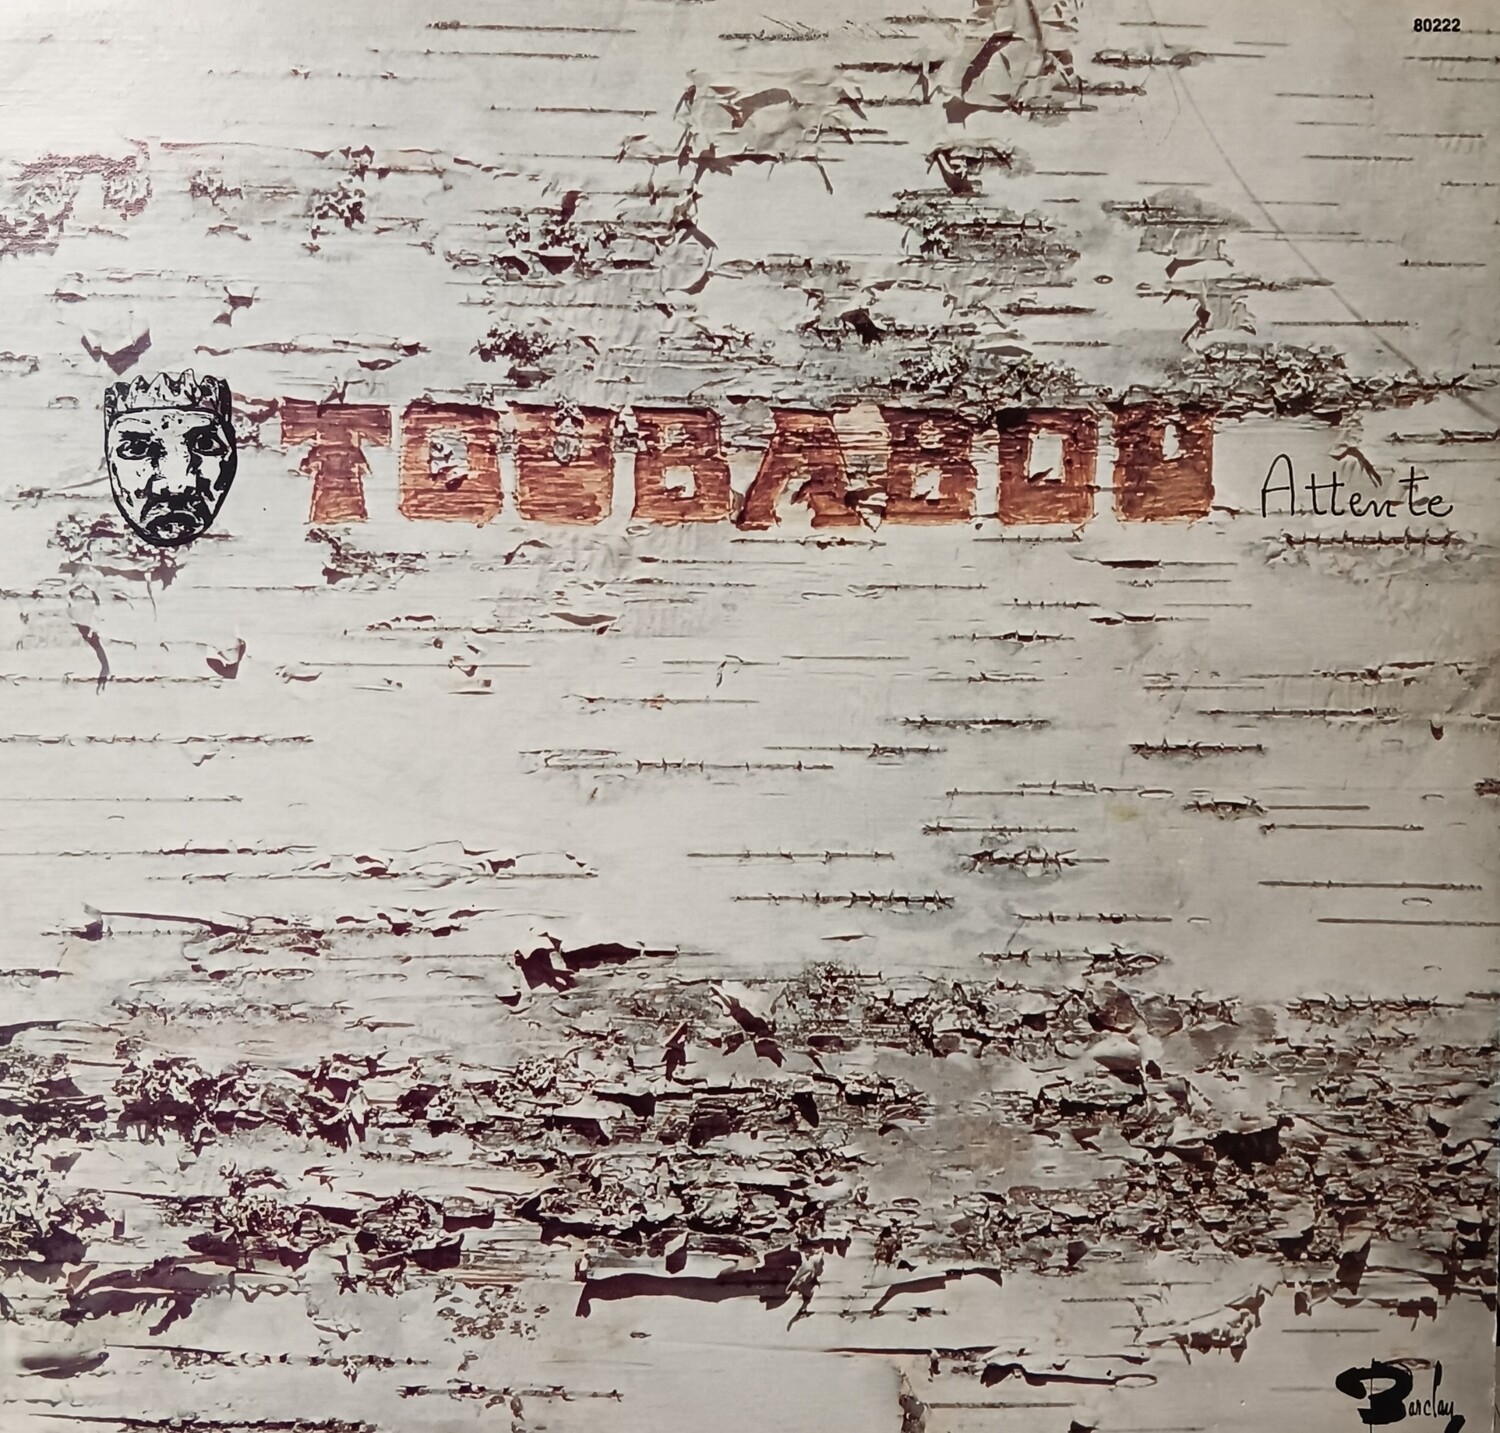 Toubabou - Attente